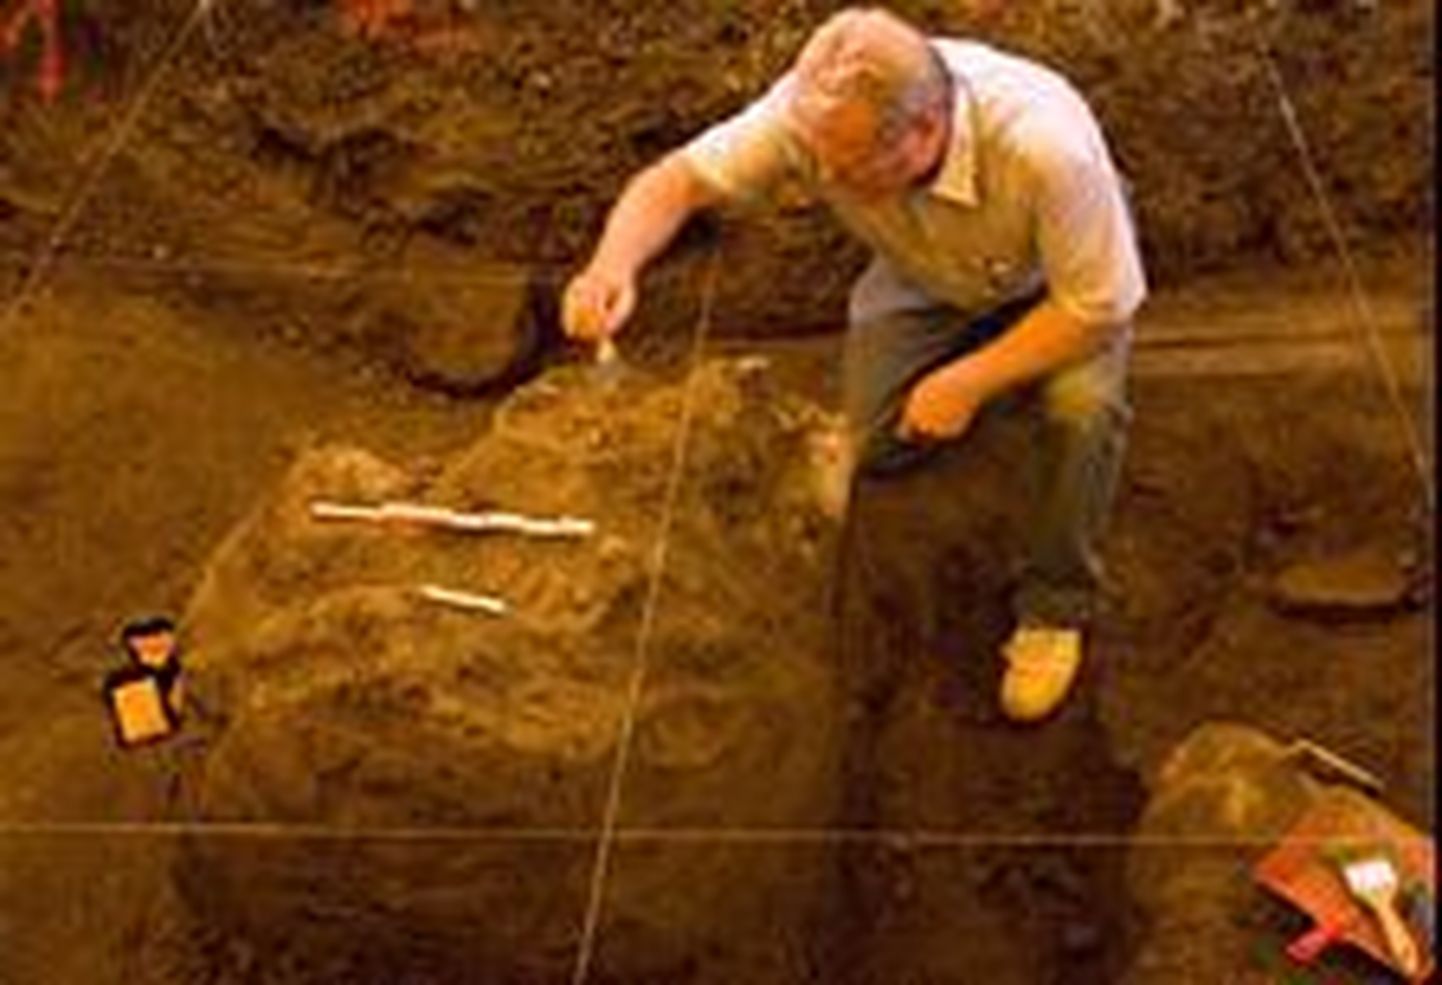 Prantsusmaalt leidi 400 000 aasta vanune stepimammuti fossiilne pealuu